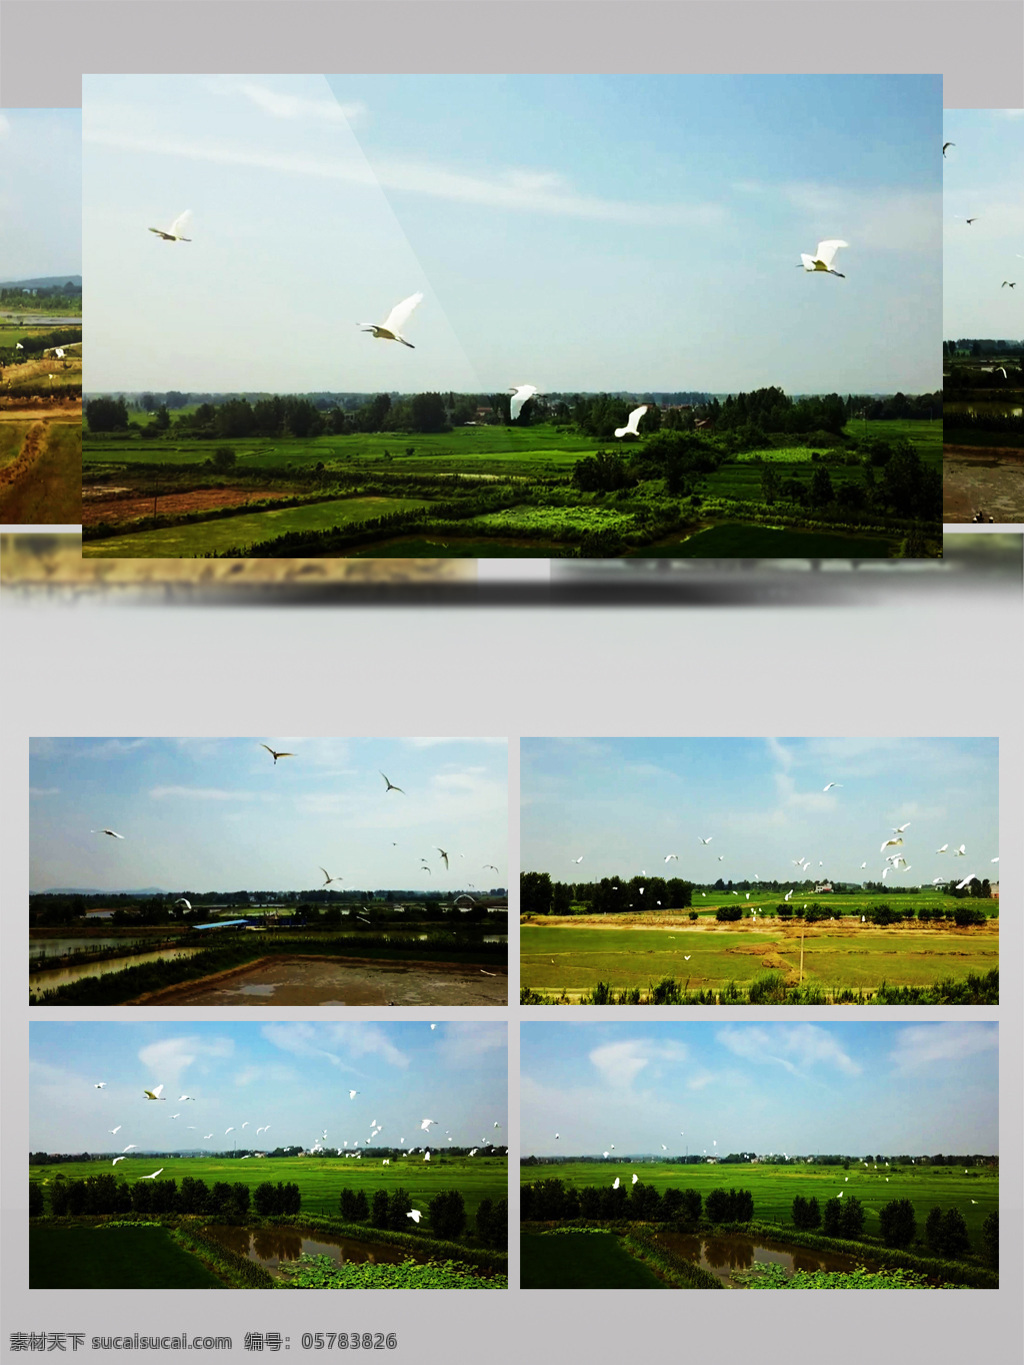 稻田 上方 一群 飞翔 白鹭 水稻 风景 视频 农田